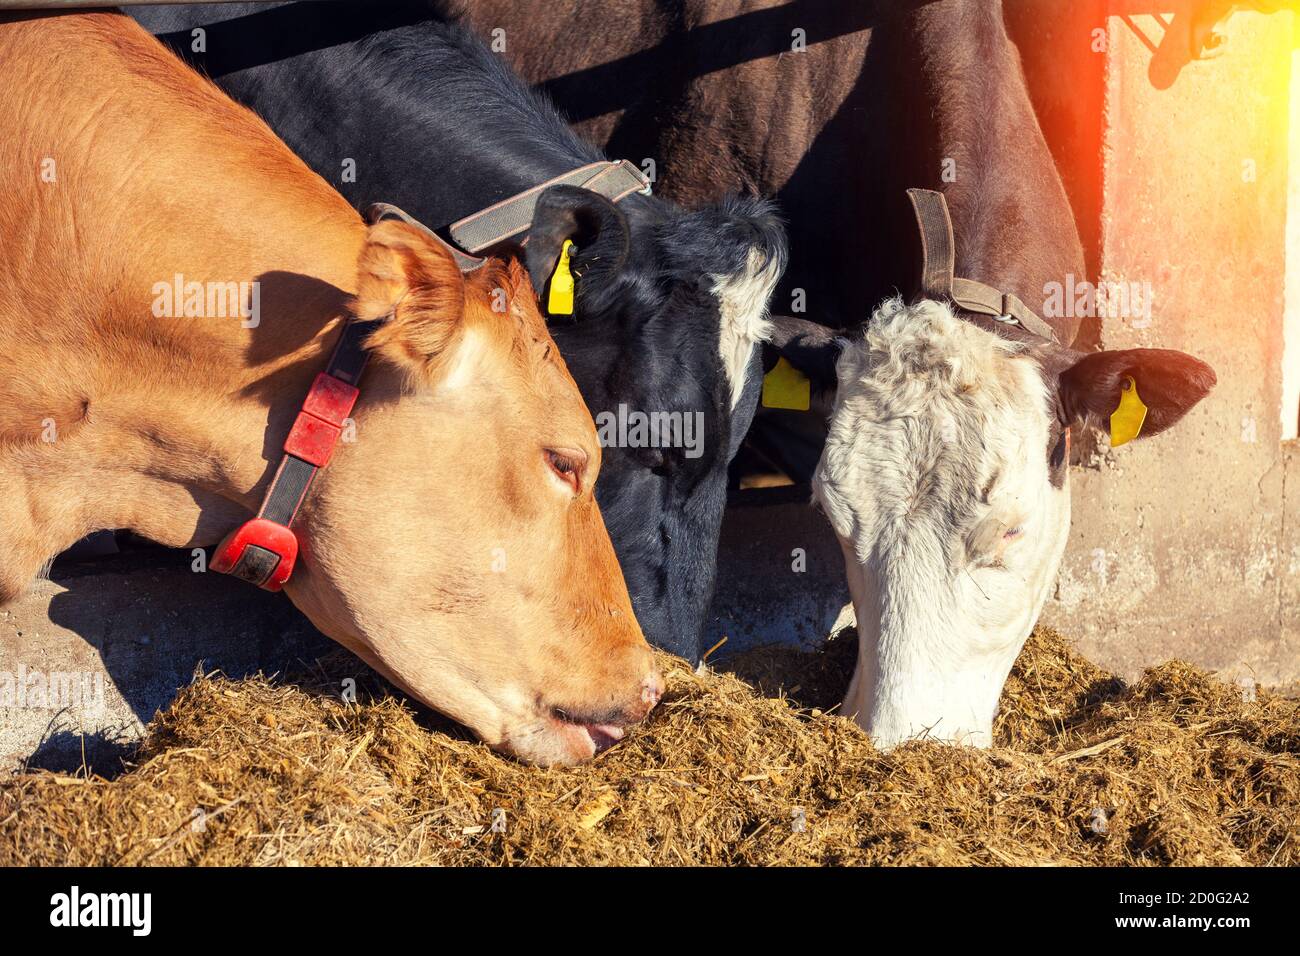 Las vacas comen heno fotografías e imágenes de alta resolución - Alamy